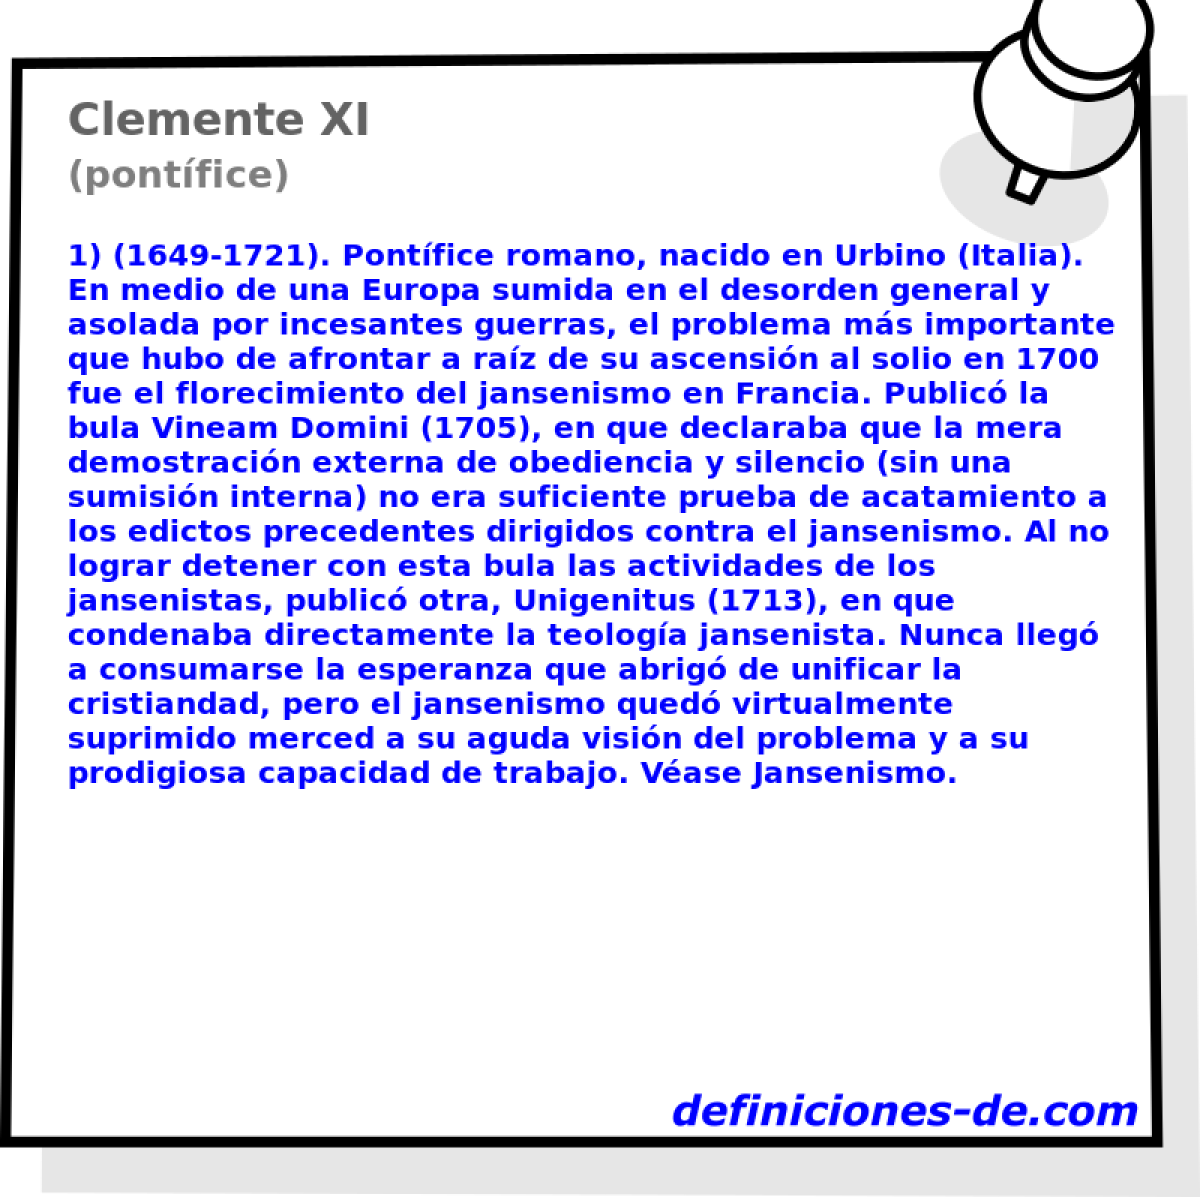 Clemente XI (pontfice)